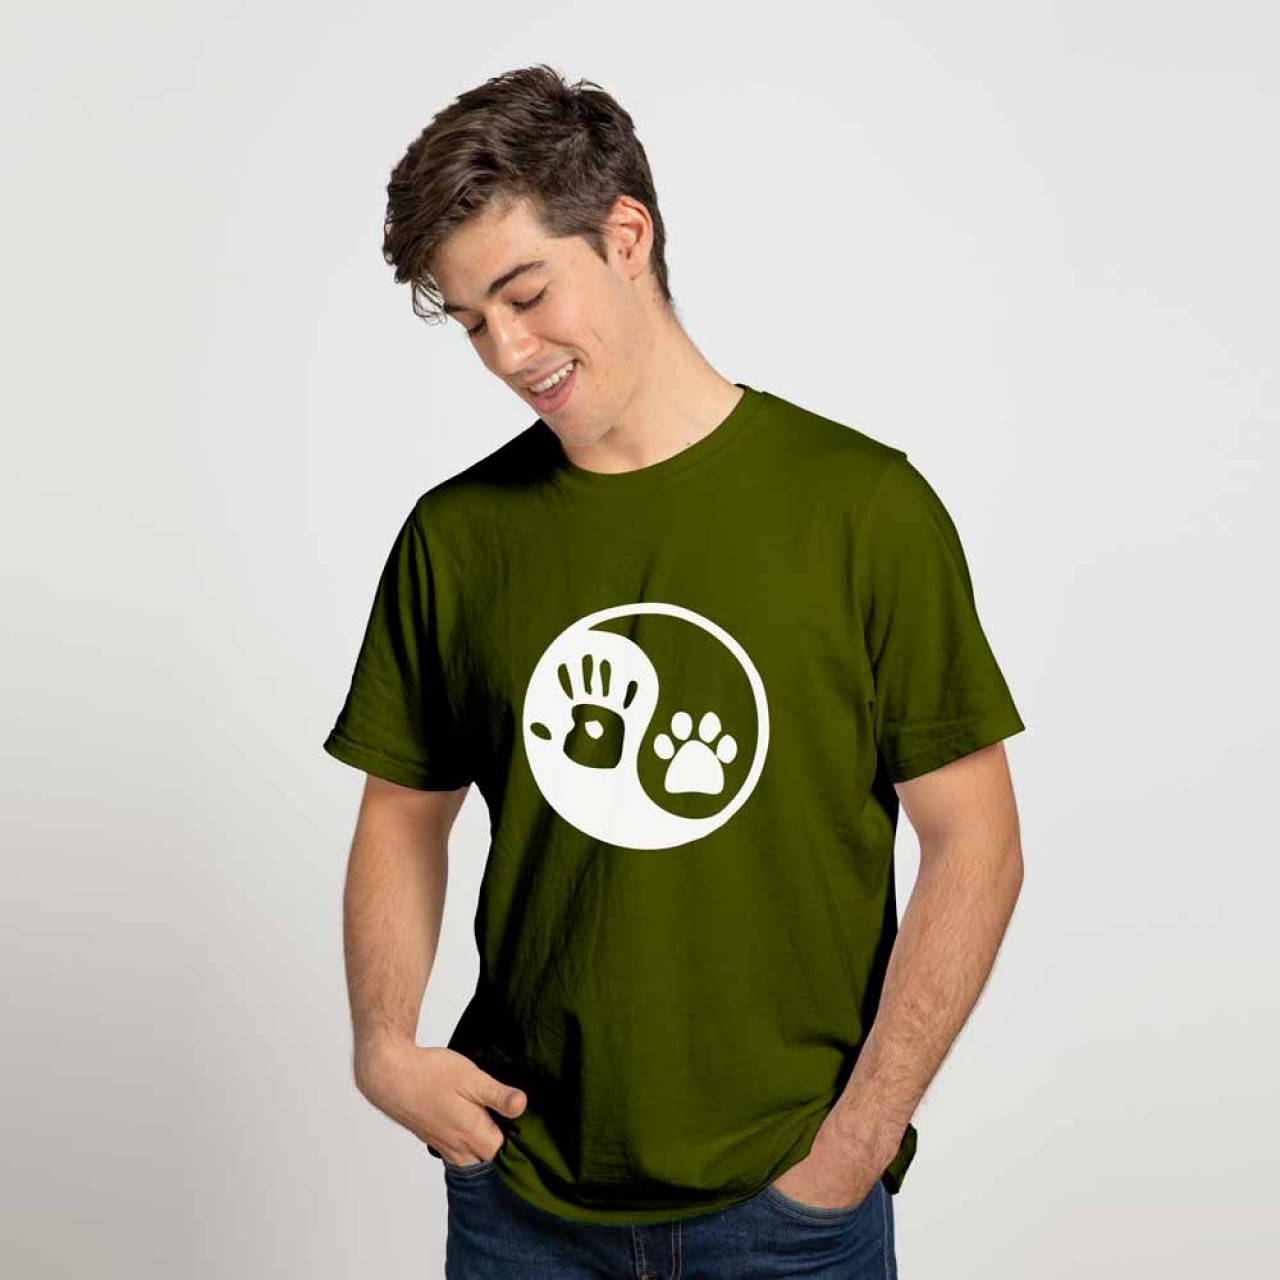 Yin Yang Human Hand Dog Paw Cotton T-Shirt For Men